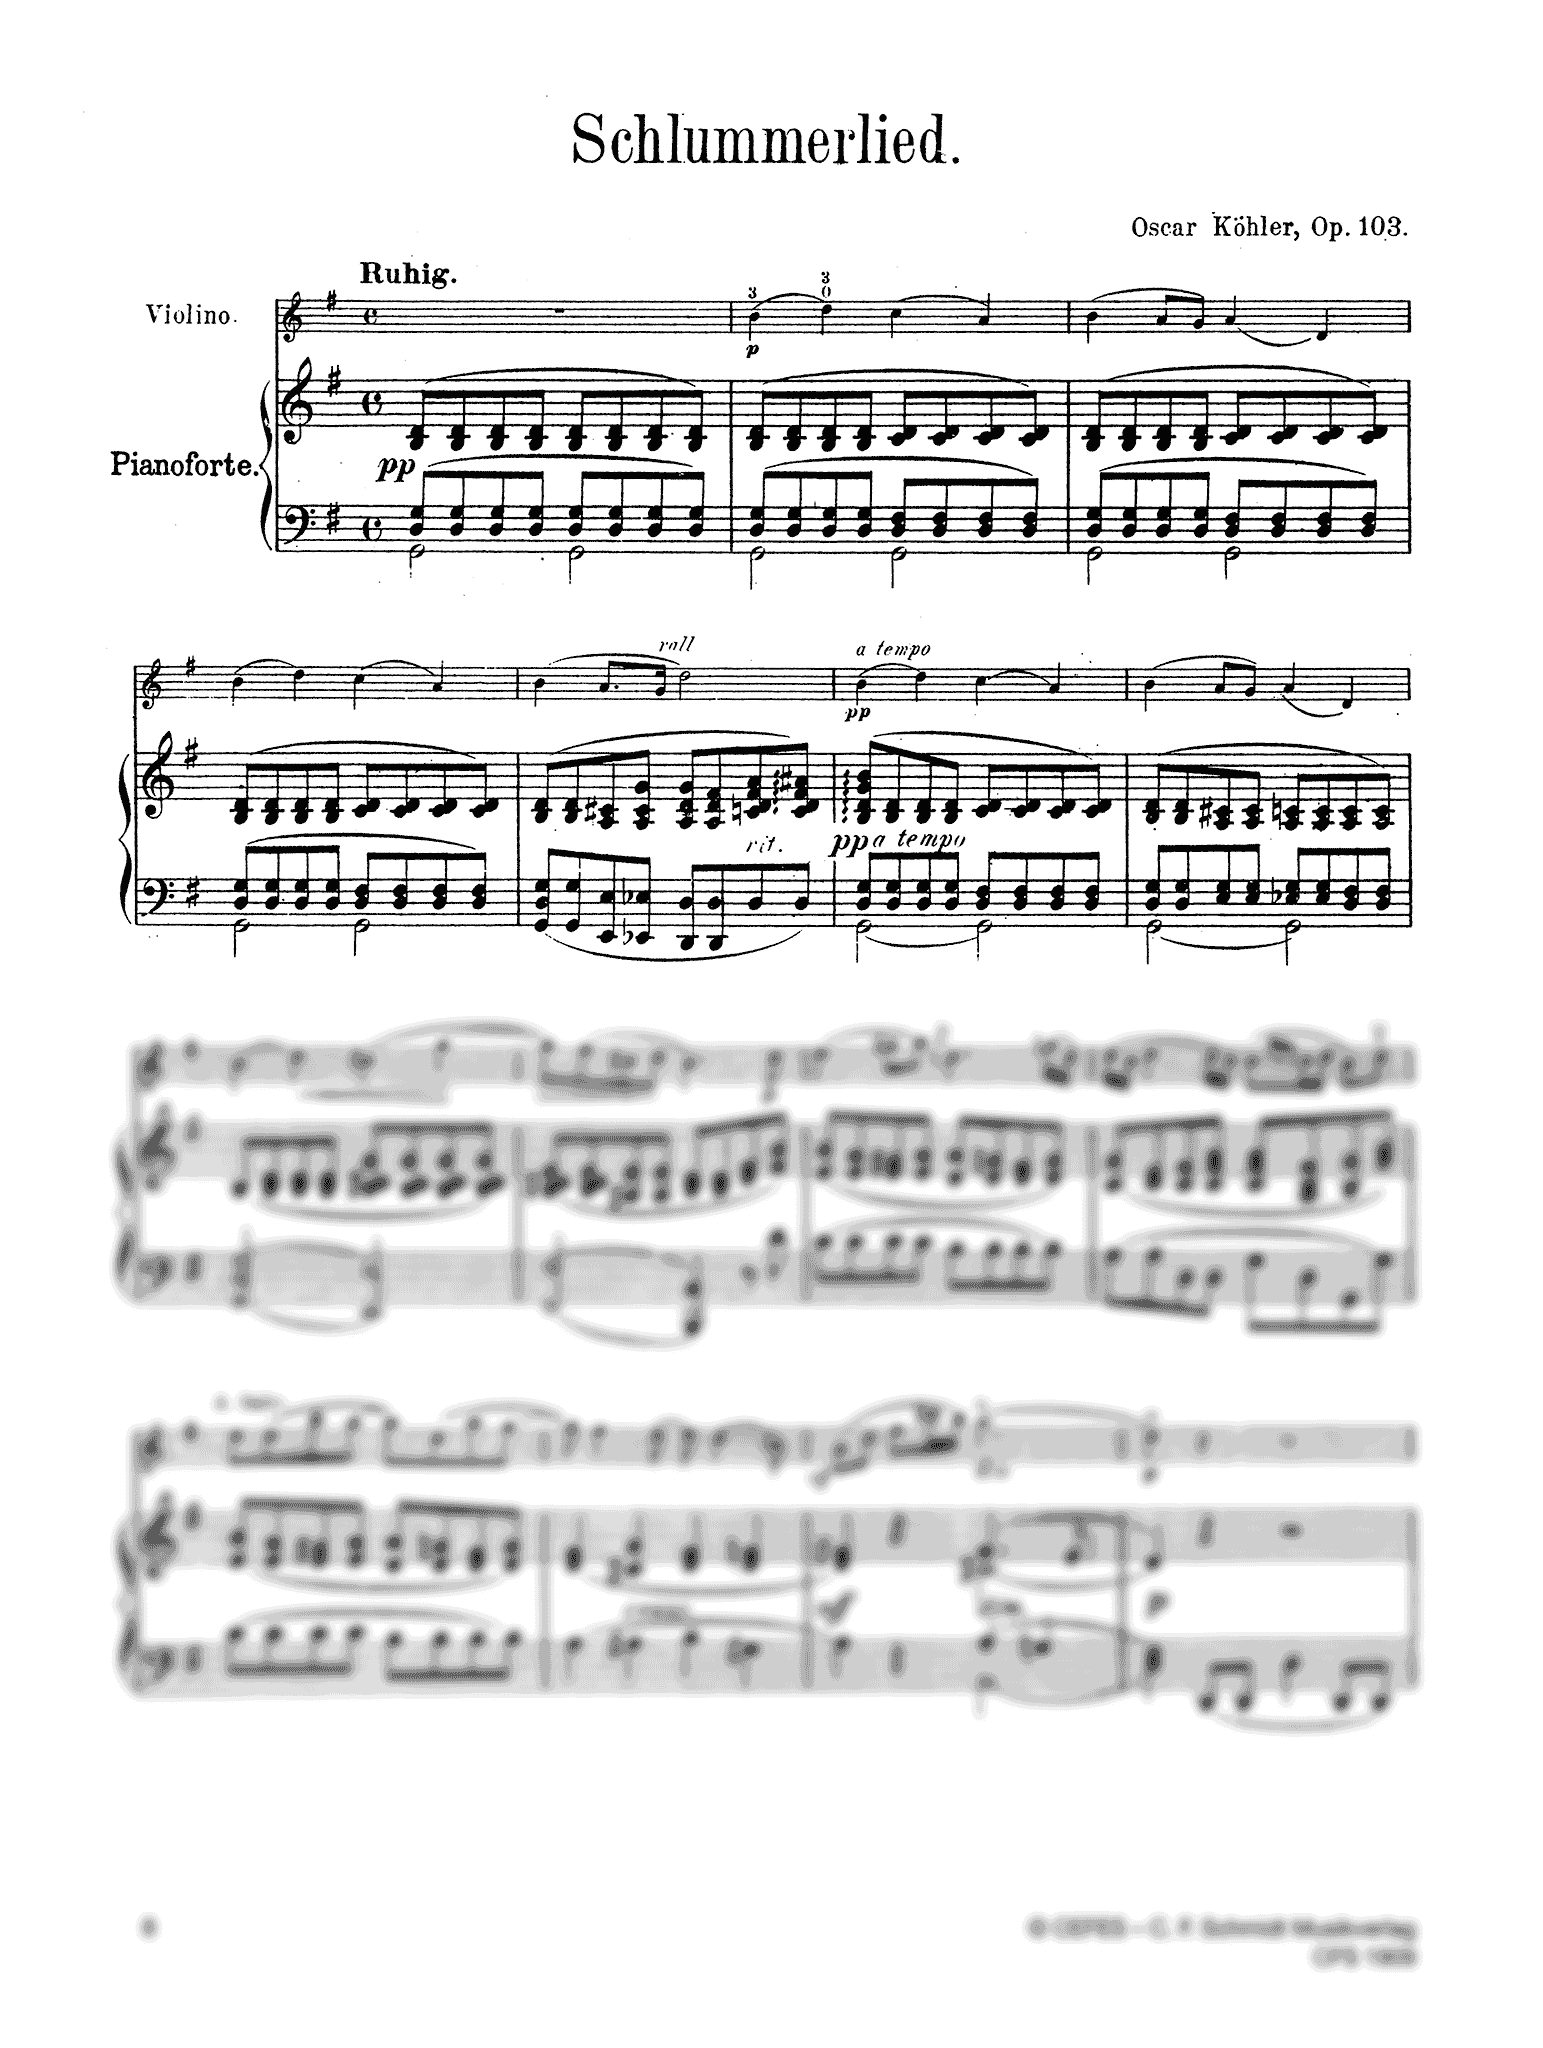 Oscar Kohler Schlummerlied, Op. 103